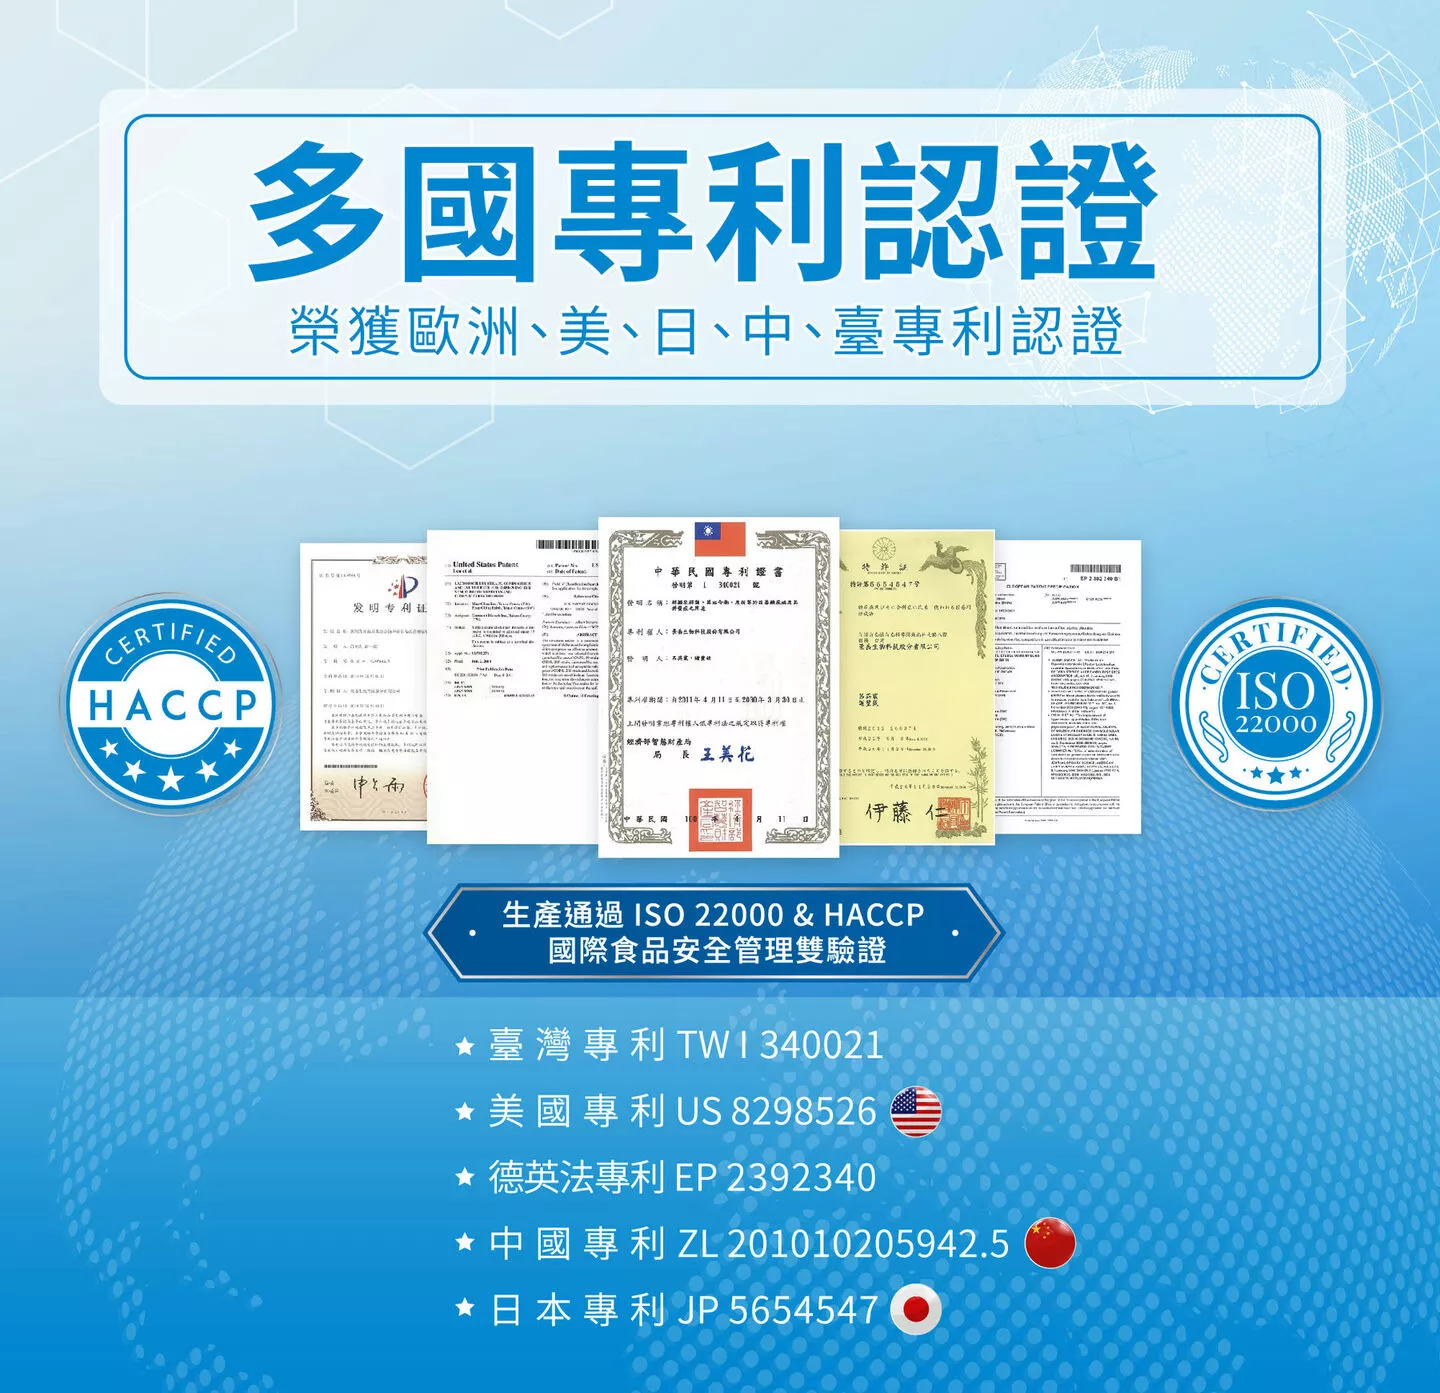 醣美樂榮獲多國專利認證，歐洲、美、日中、台灣，生產通過ISO22000&HACCP國際食品安全管理雙驗證